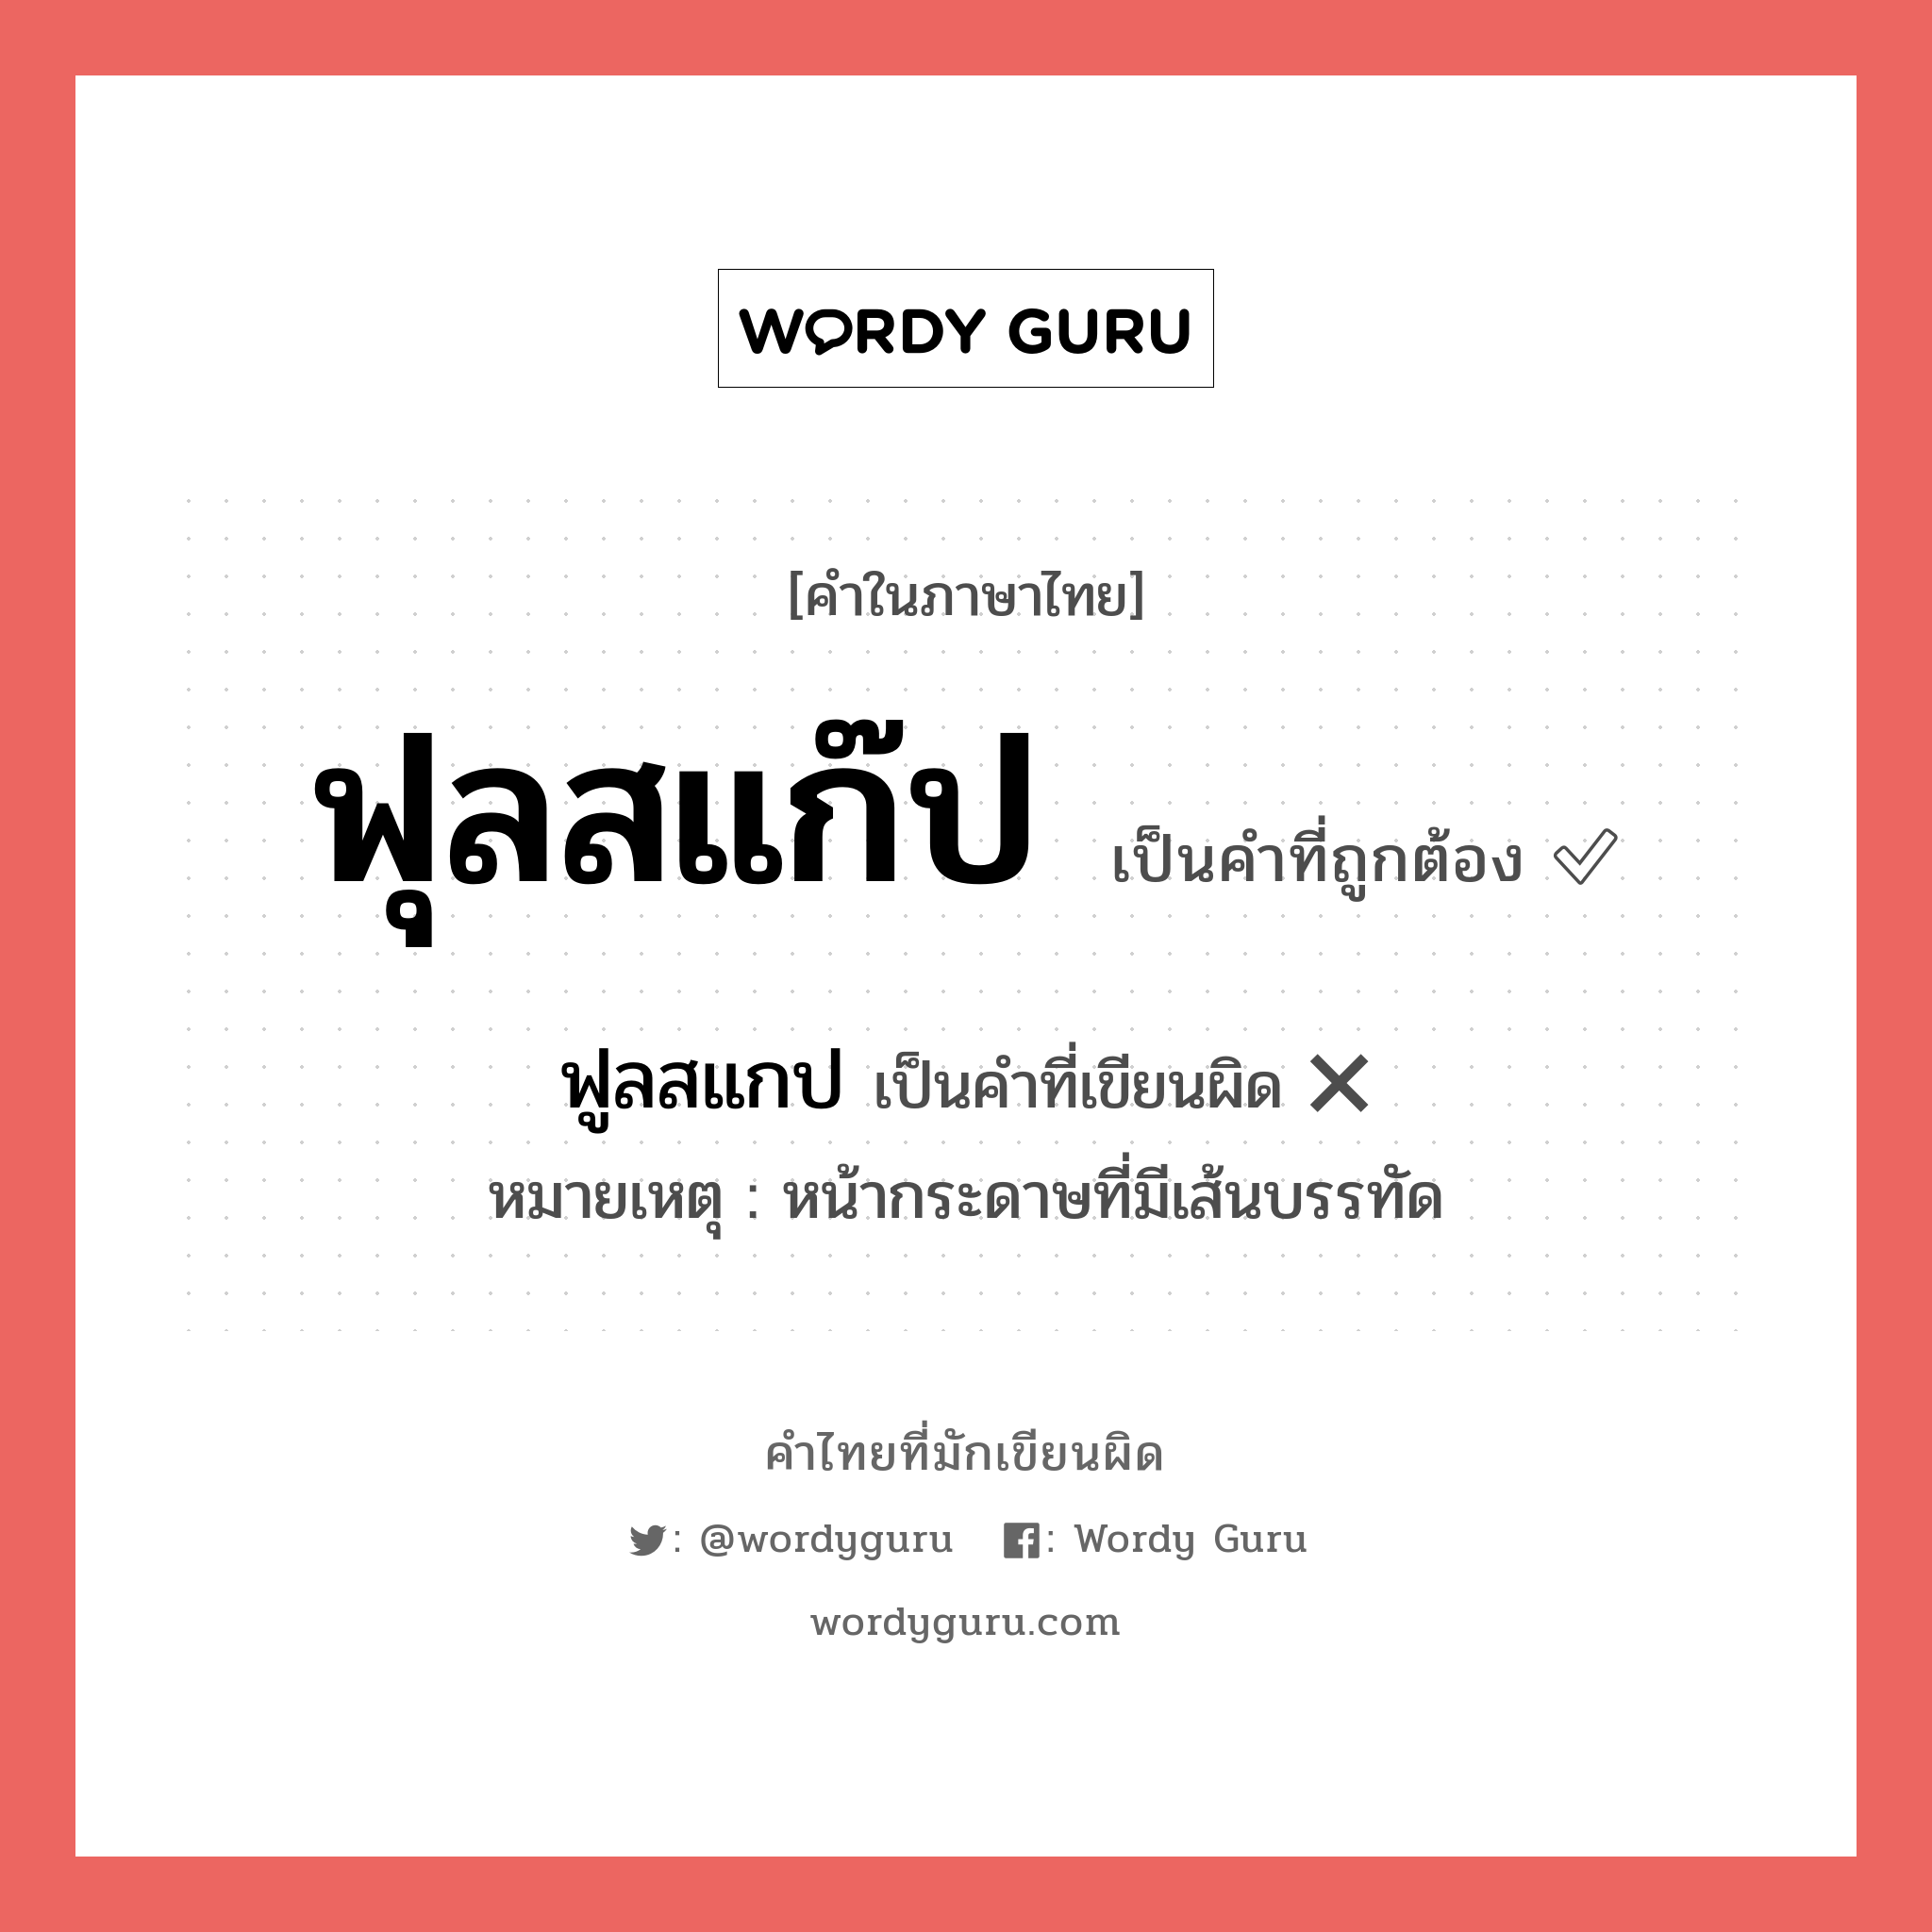 ฟูลสแกป หรือ ฟุลสแก๊ป คำไหนเขียนถูก?, คำในภาษาไทยที่มักเขียนผิด ฟูลสแกป คำที่ผิด ❌ ฟุลสแก๊ป หมายเหตุ หน้ากระดาษที่มีเส้นบรรทัด